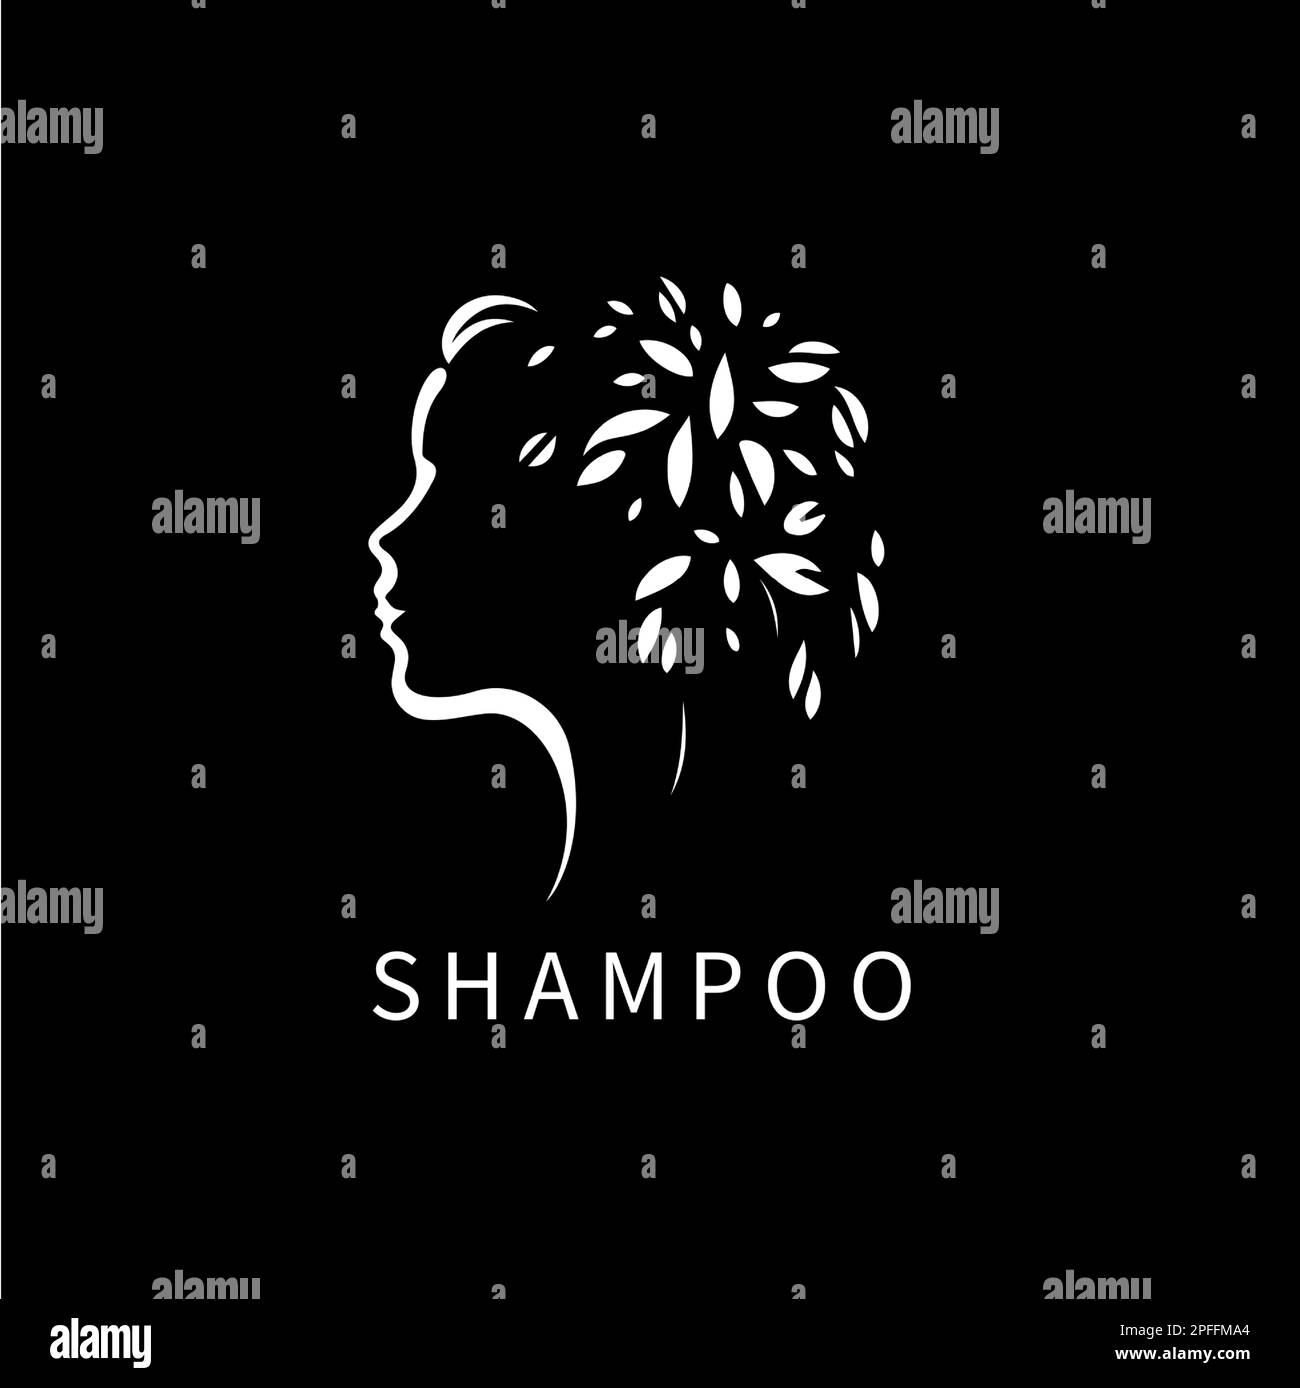 Schwarz-weiße Silhouette eines jungen Mädchens, Profilsymbol mit Blättern, modernes Logo für Kosmetikmarken, Haarpflegeprodukte, Schönheitssalon Stock Vektor